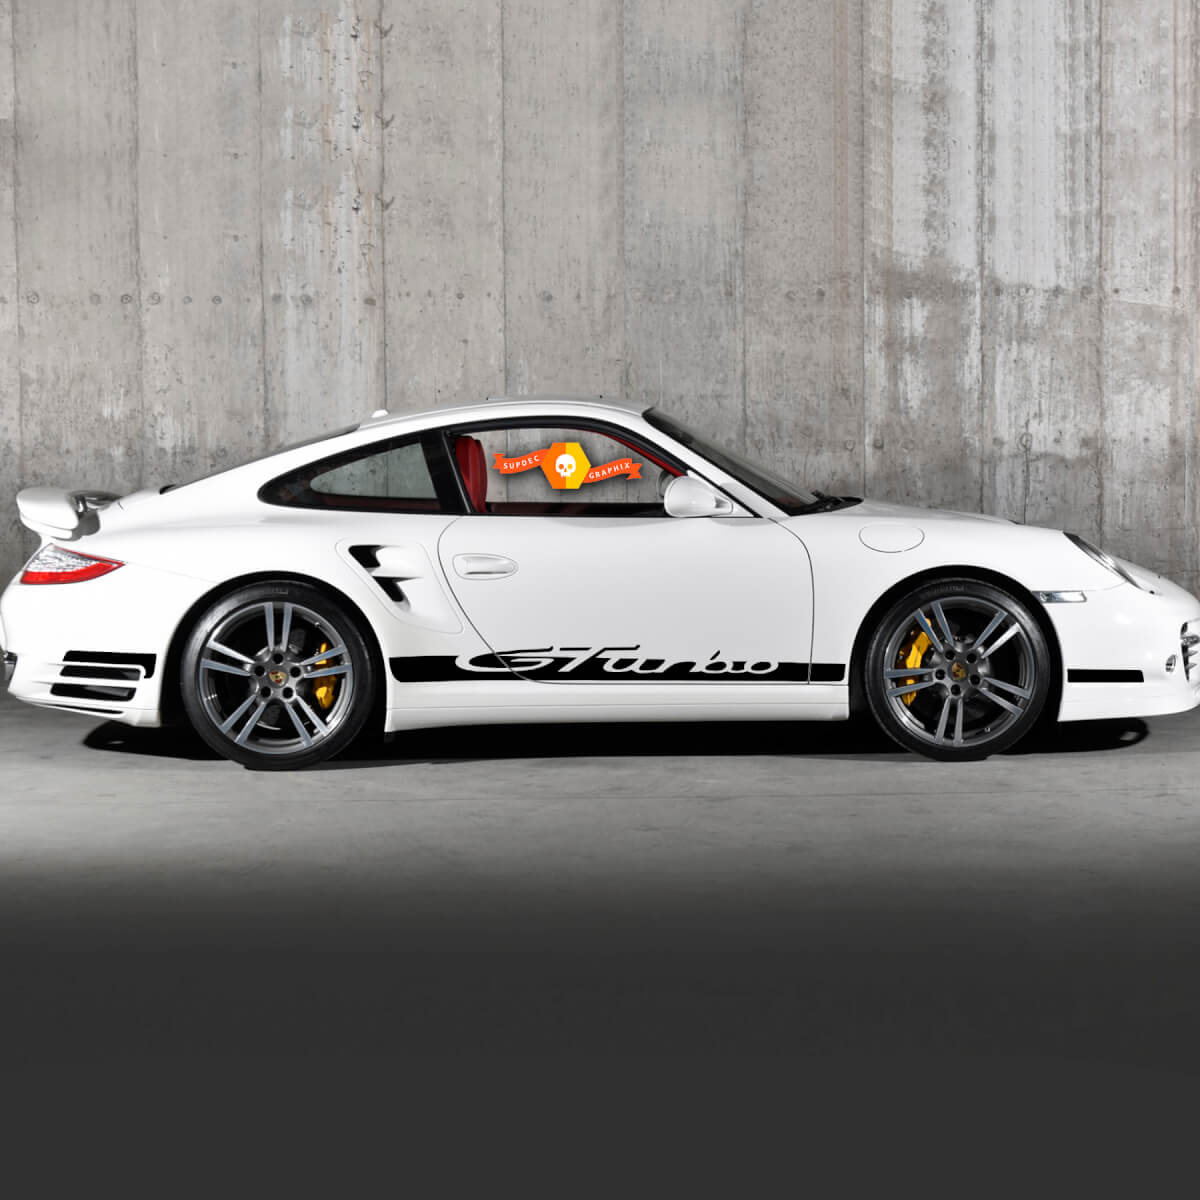 Porsche Rocker Panel Racing Turbo Seite Seitenstreifen Aufkleber Aufkleber